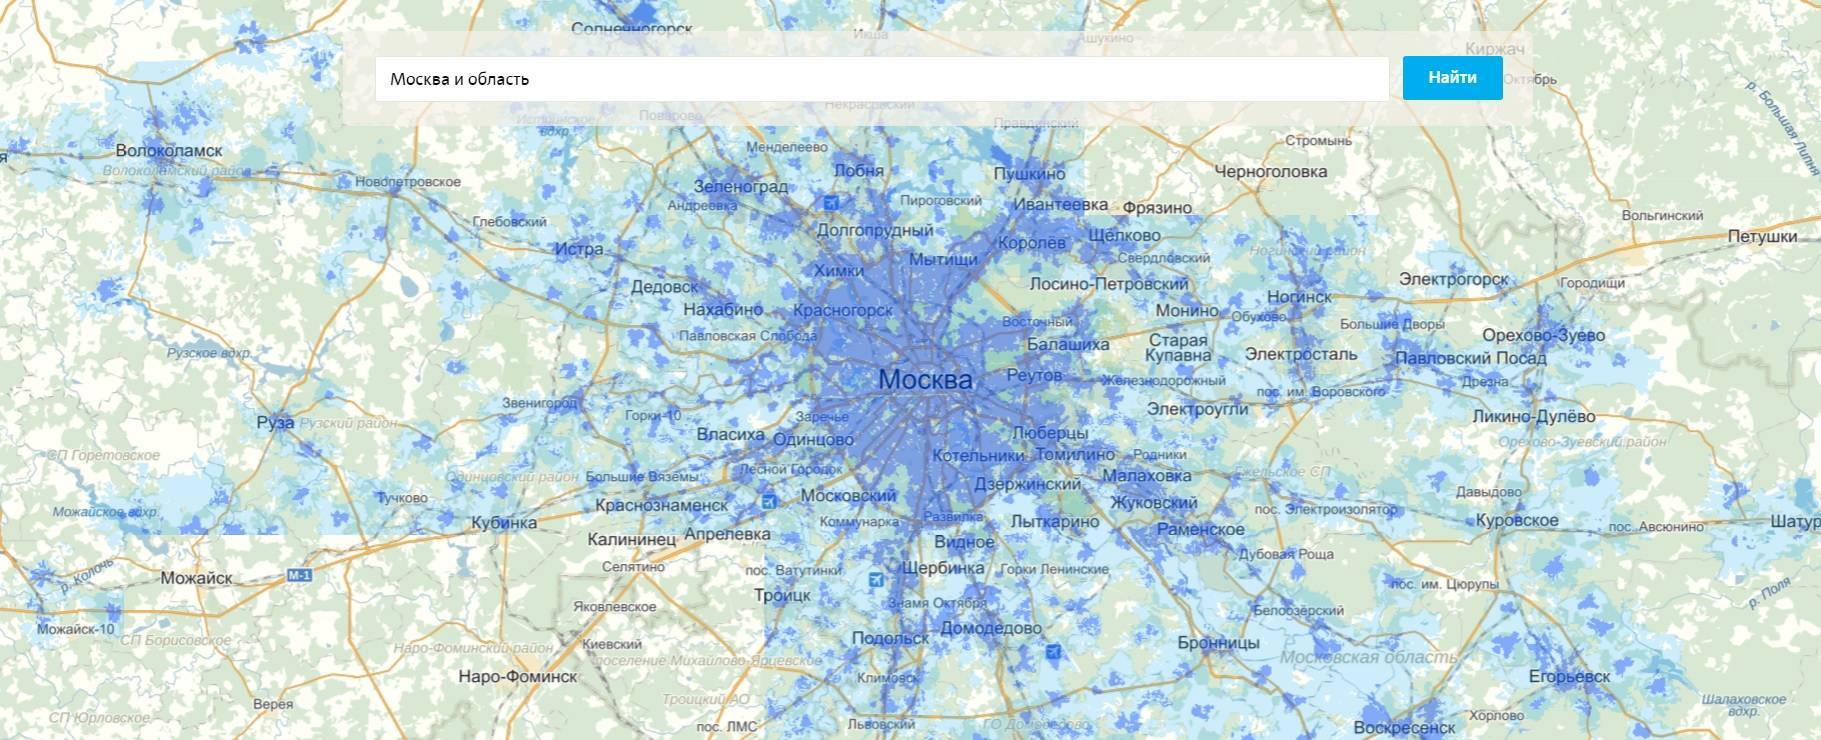 Карта зоны покрытия йота сети 3g 4g по россии 2020 году: охват интернет-связи yota